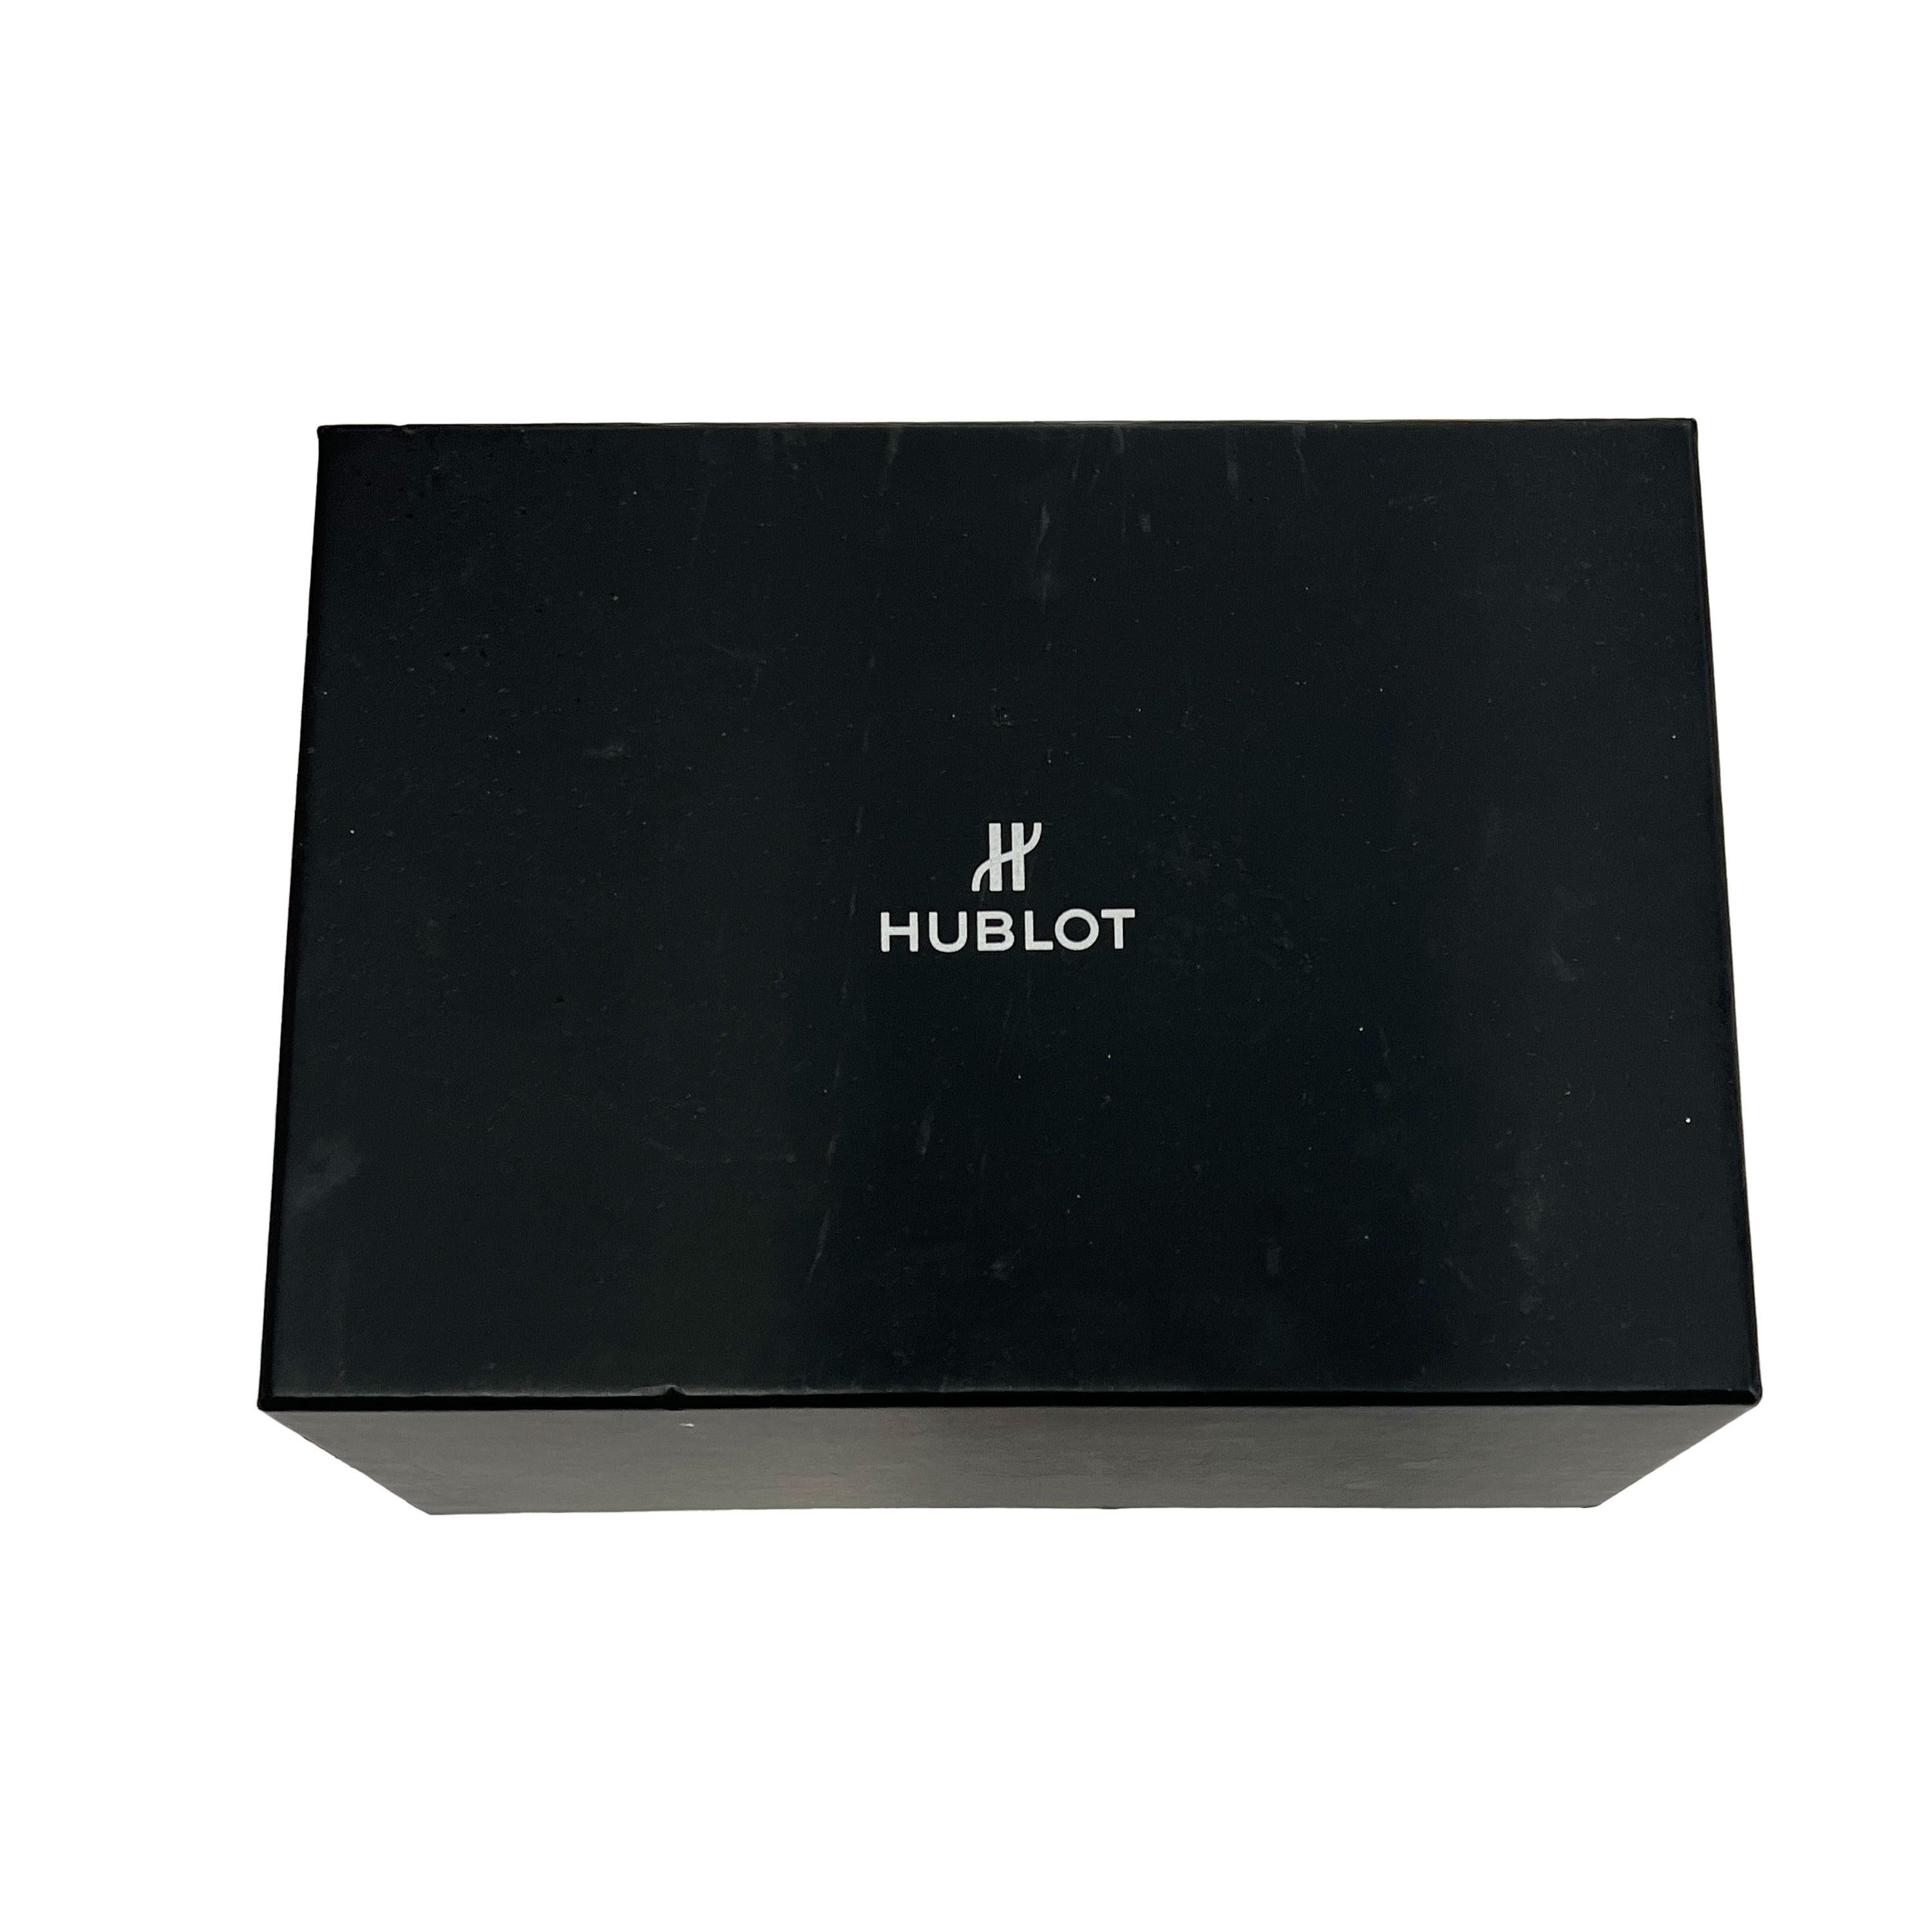 Hublot Big Bang Ferrari 401.QX.0123.VR.FSX14 Men's Watch in  Carbon Fiber For Sale 1